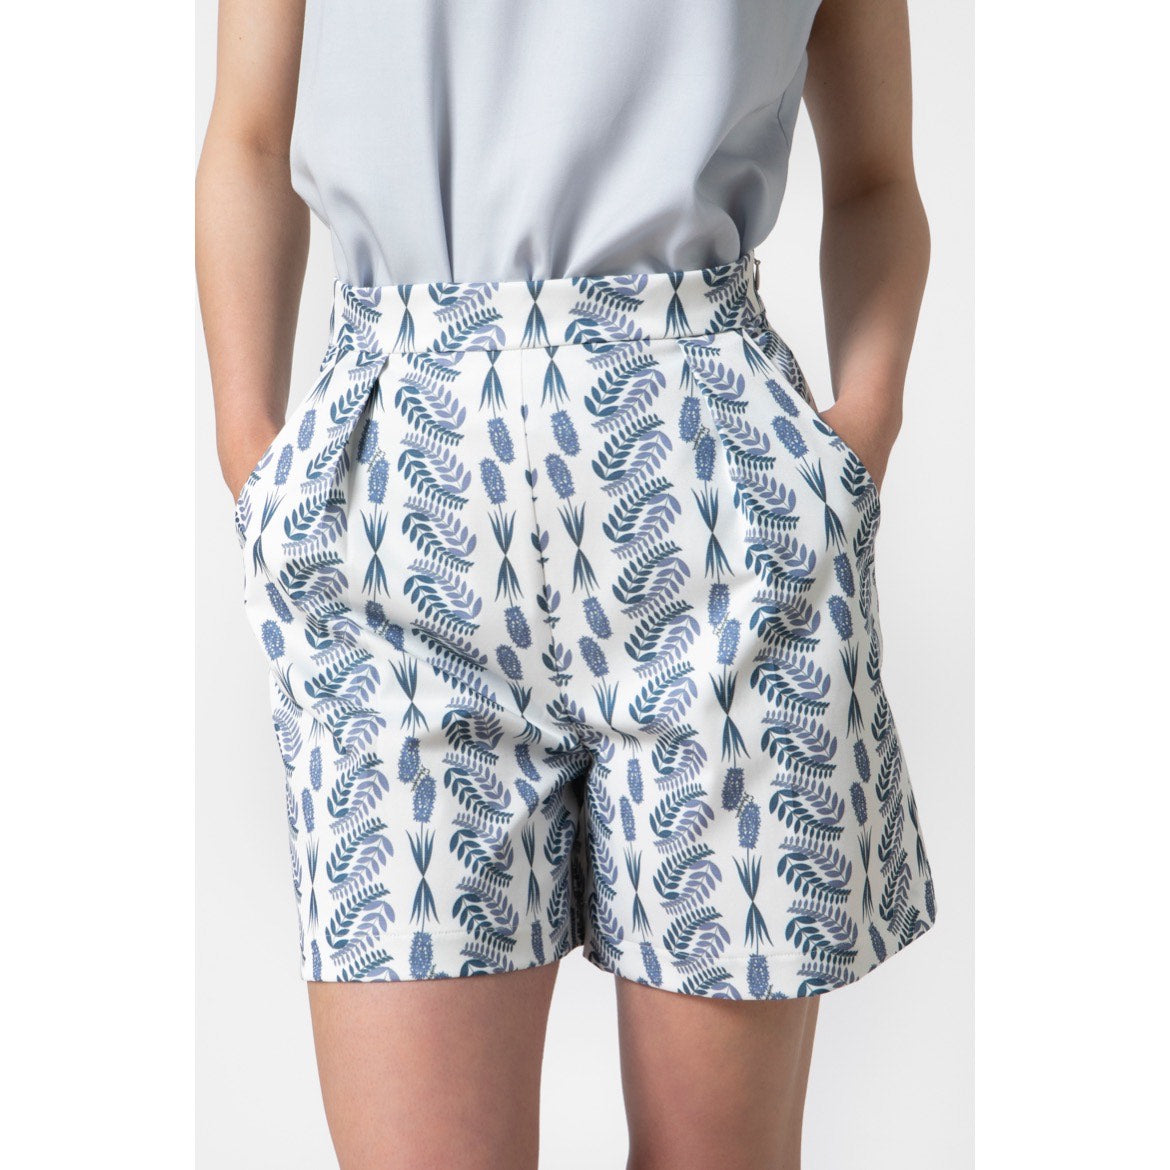 Hyacinth Shorts - Cotton Printed Shorts